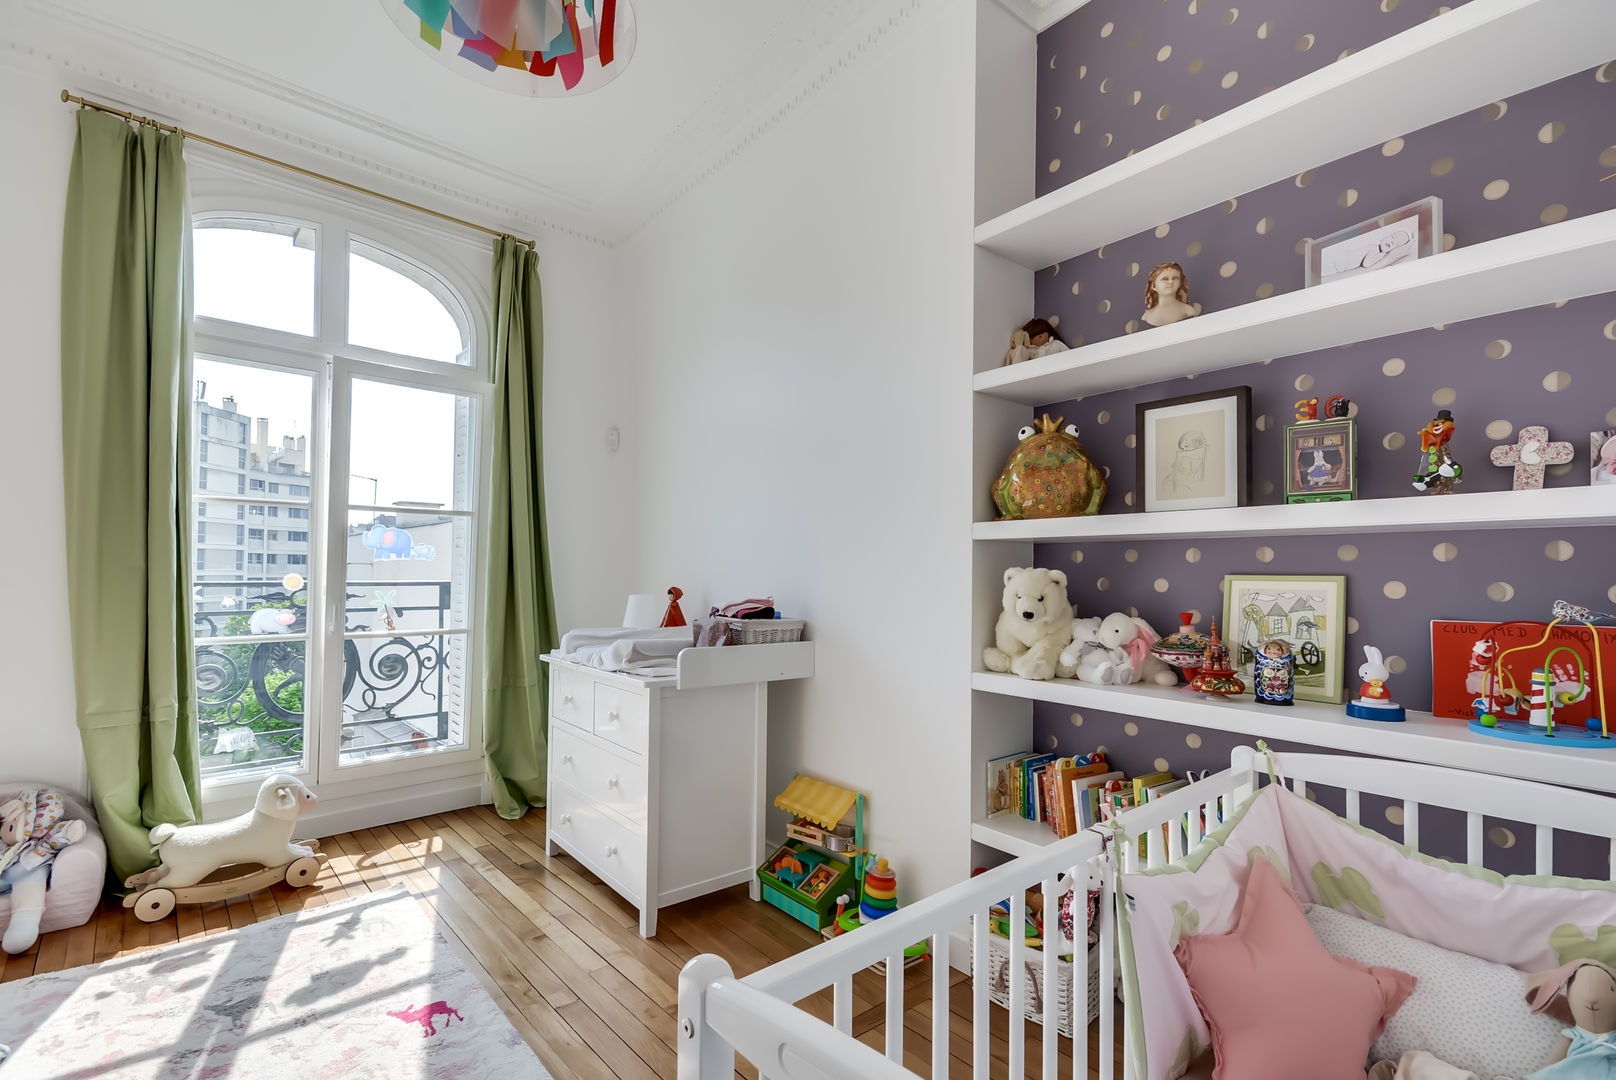 Un appartement haussmanien revisité - Paris 16e, ATELIER FB ATELIER FB Quarto infantil moderno